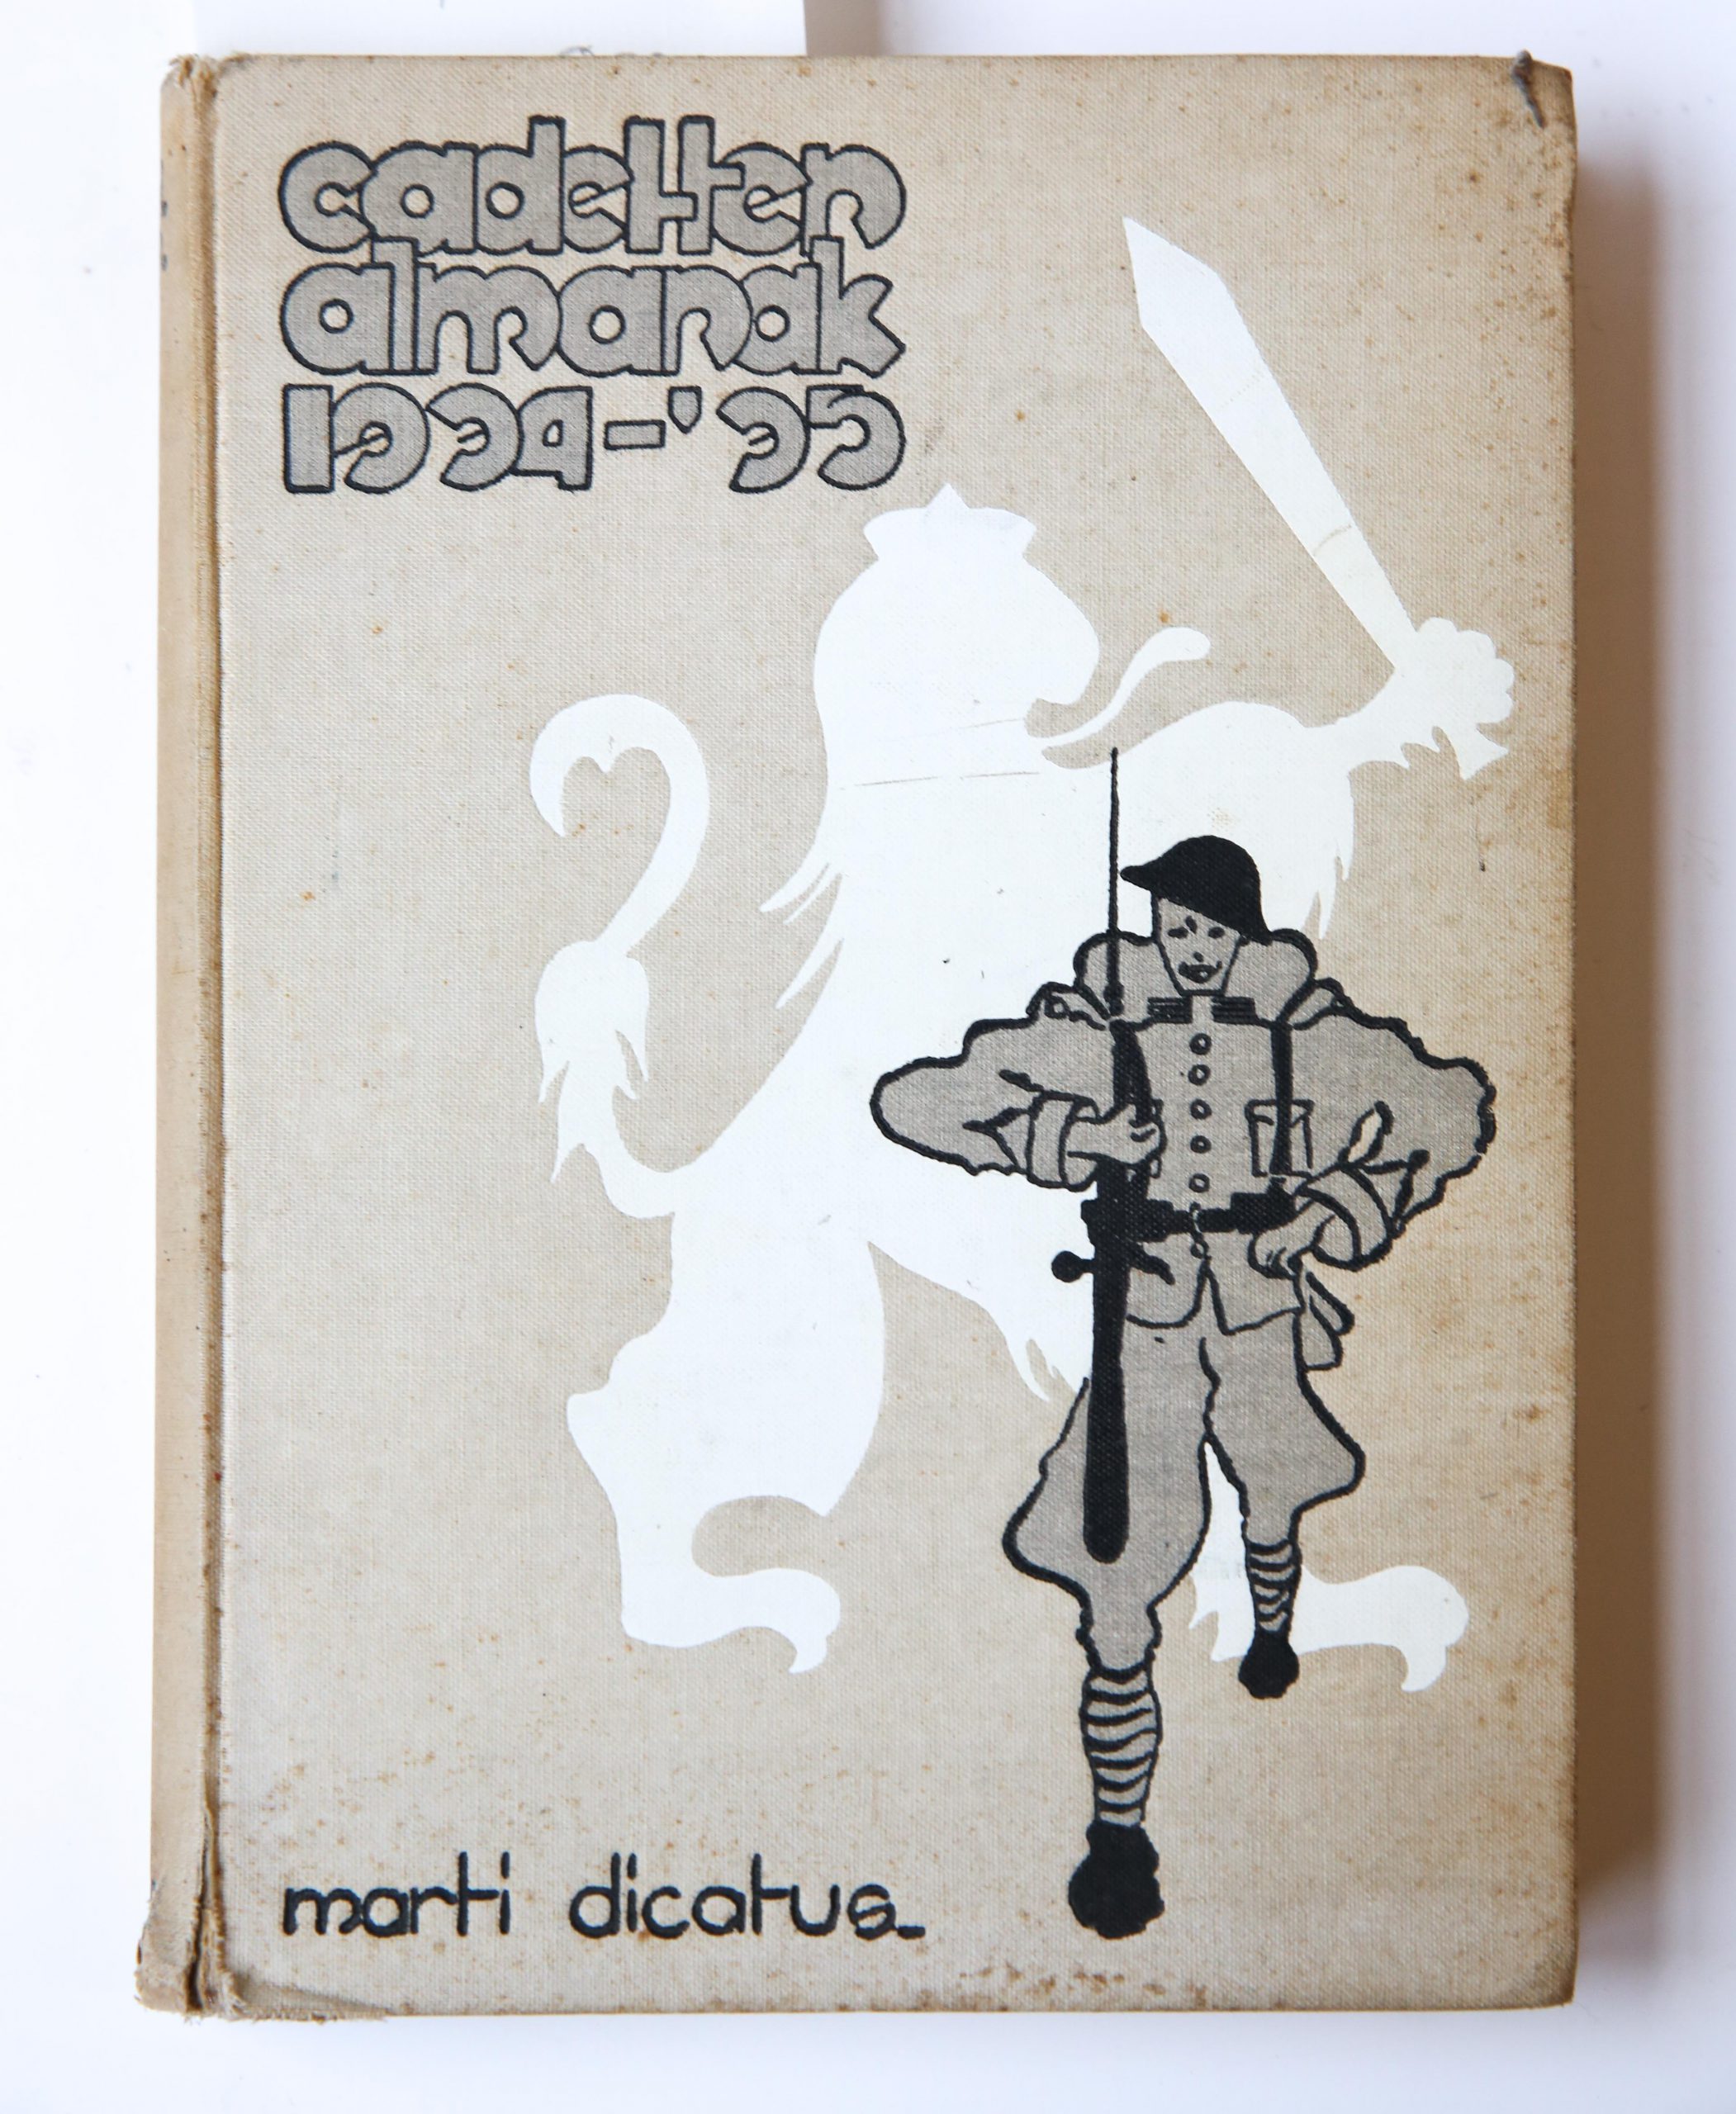 Cadetten Almanak 1934-1935, Koninklijke Militaire Academie: Uitgave van het corps Cadetten, 1935, 159 pp. Text in Dutch.